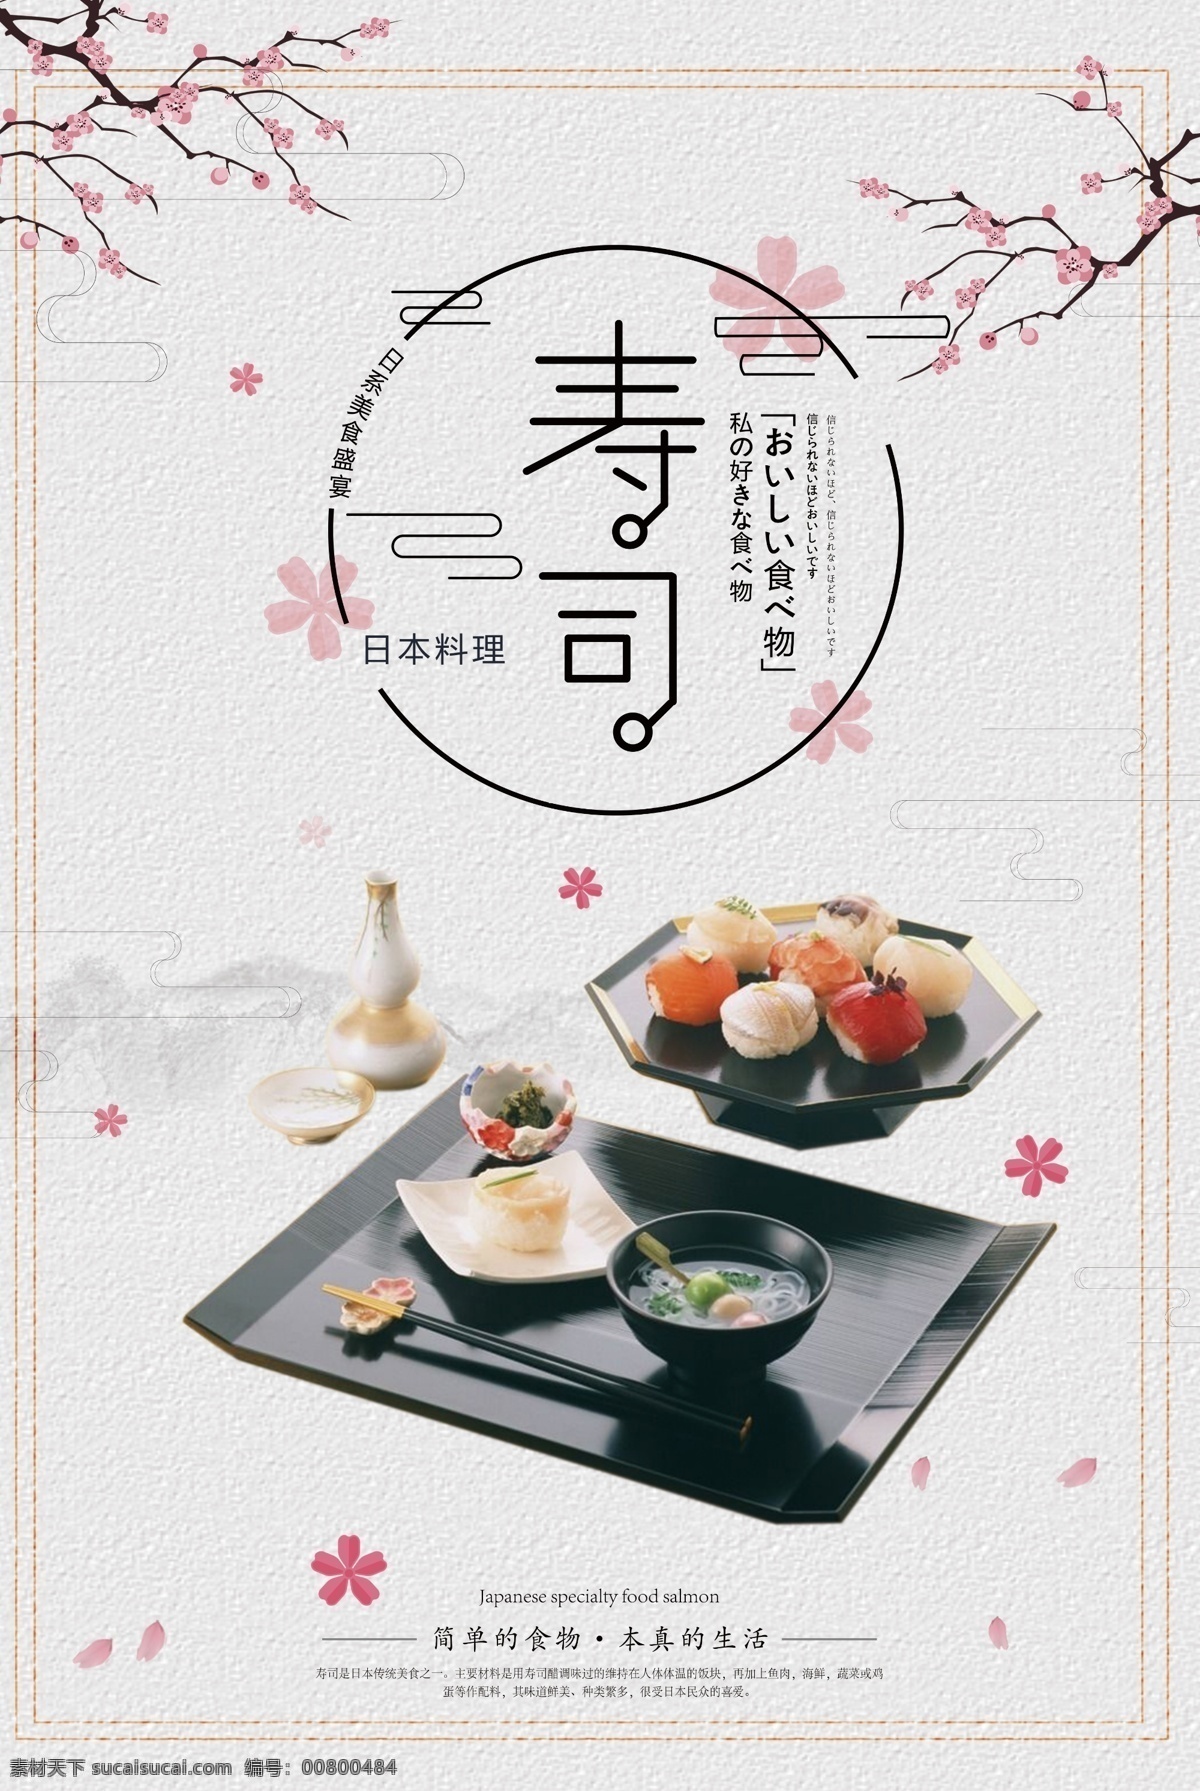 日式餐厅 日本菜 日本寿司图片 生鱼片 日式美食 舌尖上的日本 日式茶馆 日本印象 日式料理 日本料理菜谱 韩国美食